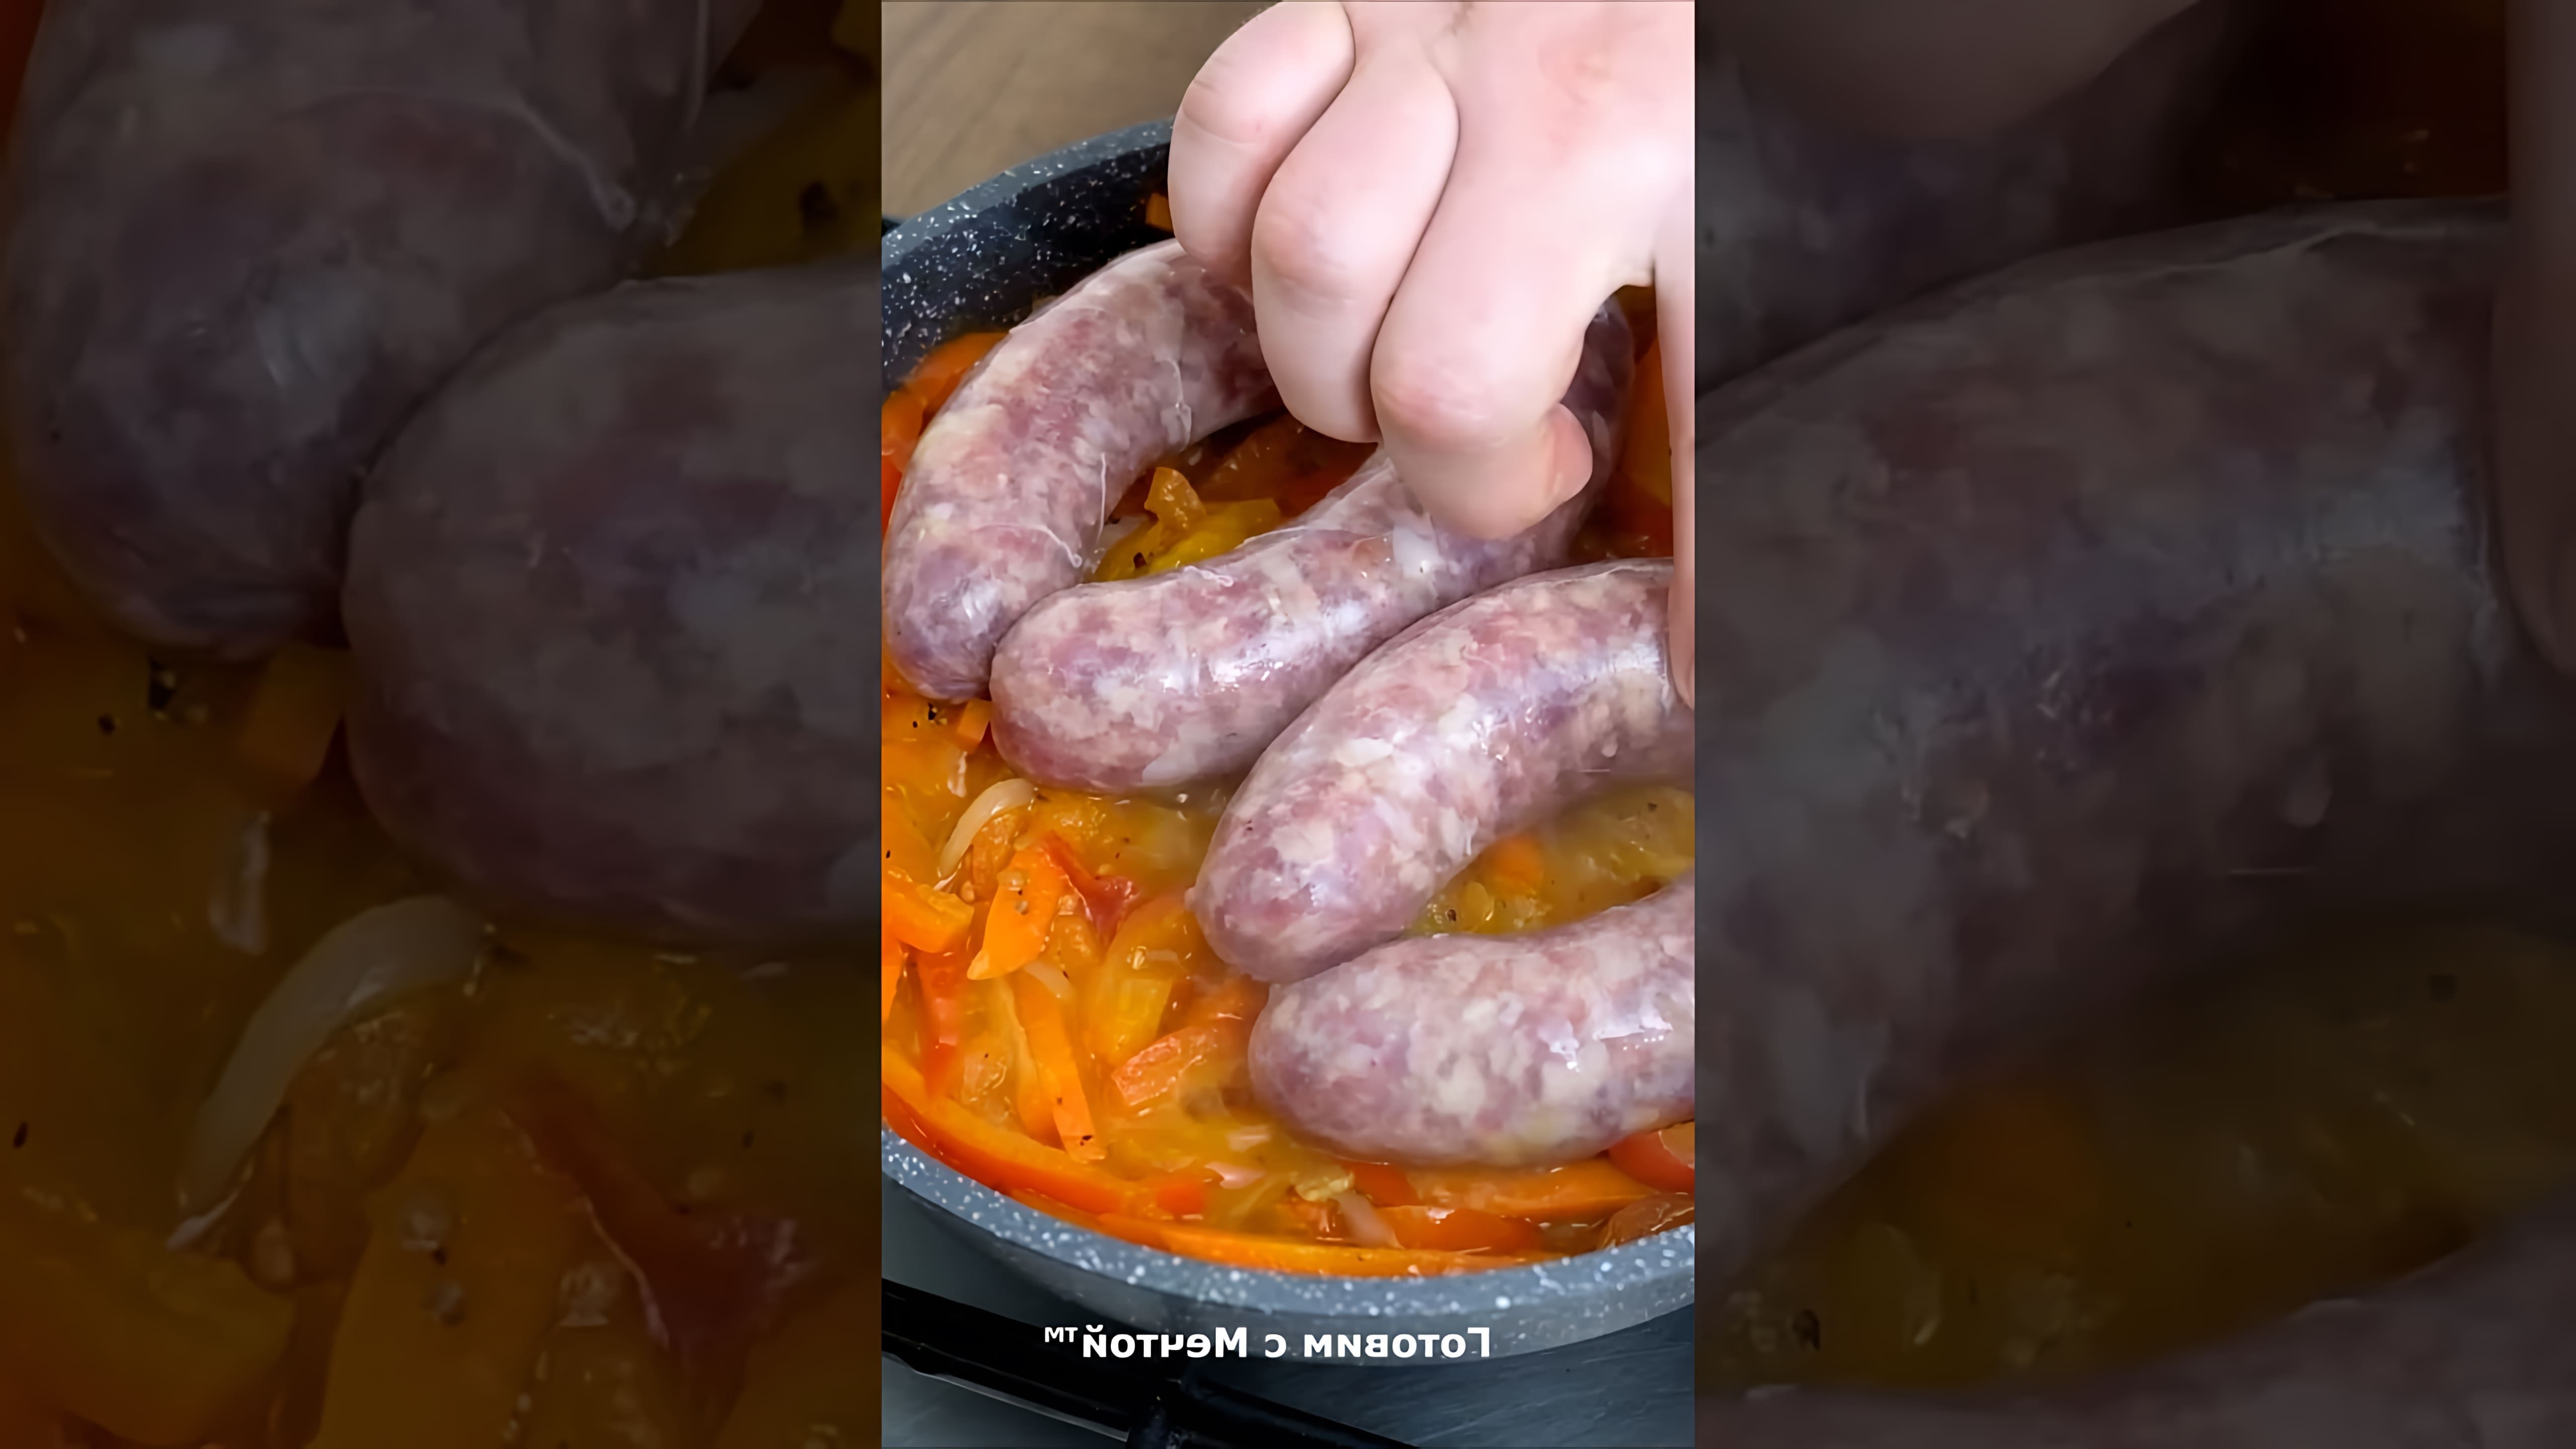 В этом видео демонстрируется процесс приготовления вкусного блюда - колбасок с томатами и перцем